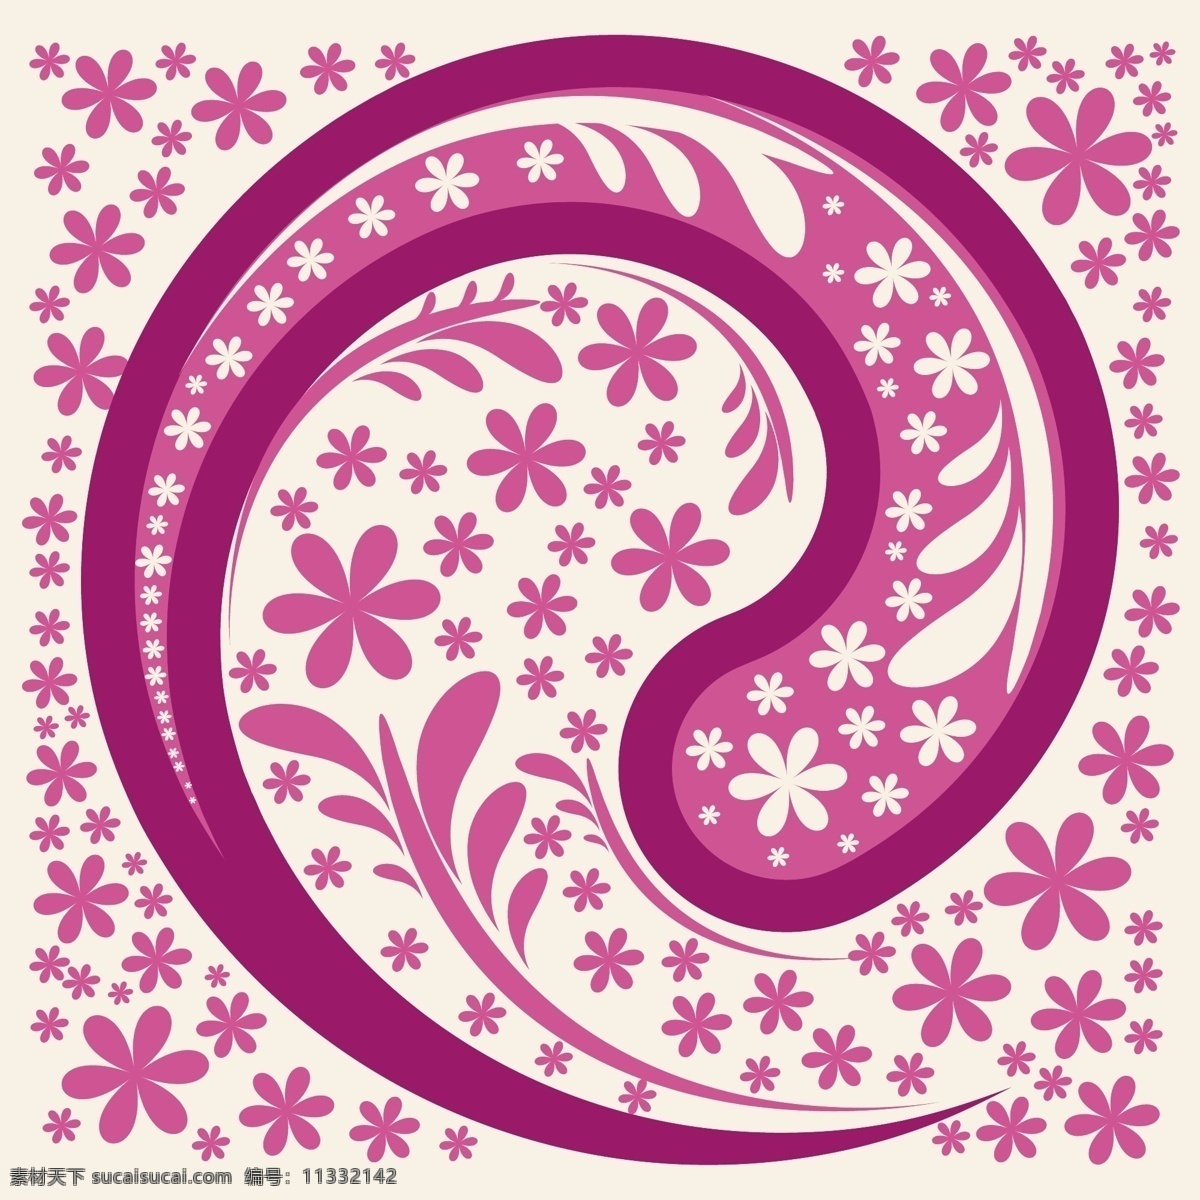 粉红色 花纹 背景 矢量 佩斯利 印度 花卉 图案 无缝 程式化 佩斯利背景 佩斯利壁纸 佩斯利图案 佩 斯利 花的背景 花的佩斯利